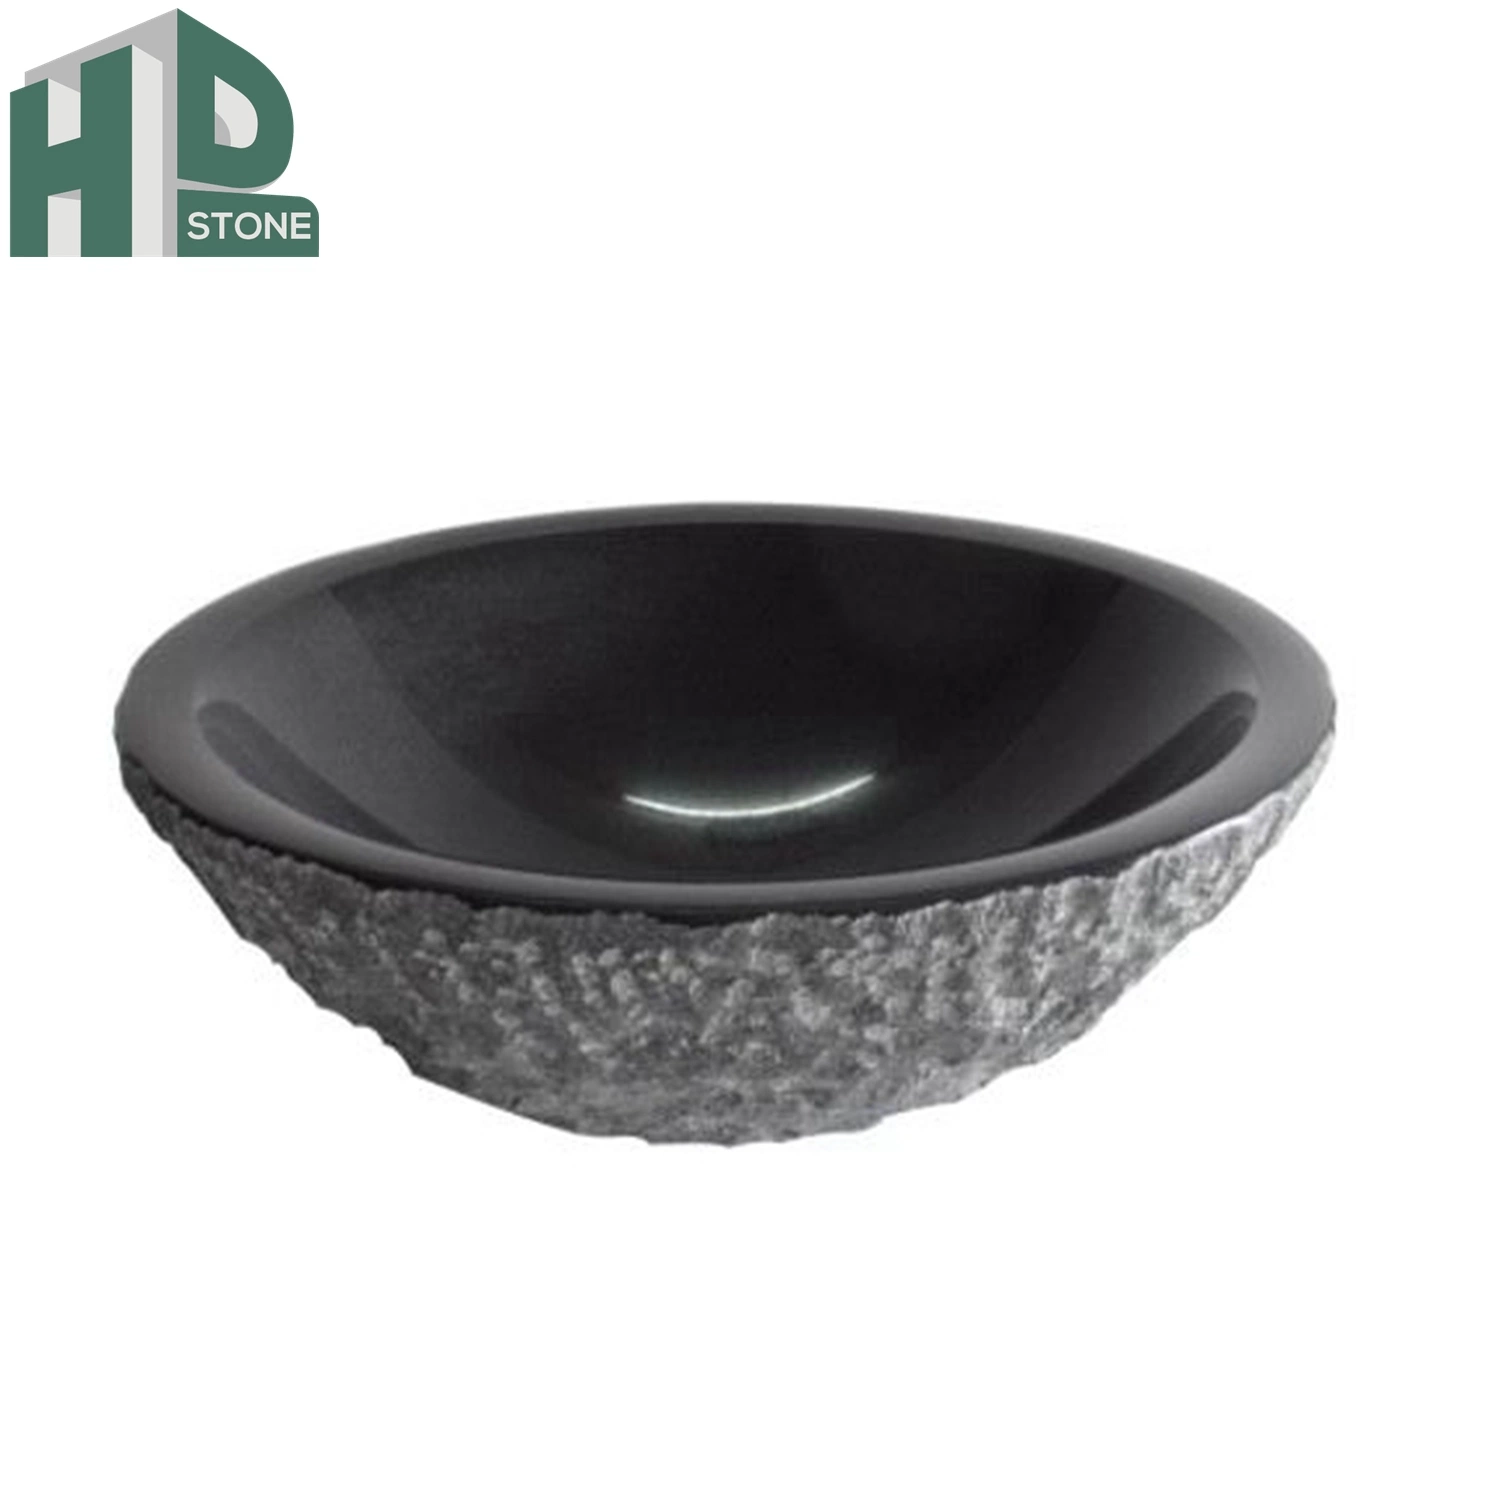 Le granit noir pur Shanxi évier de cuisine salle de bains en granit noir produit lavabo